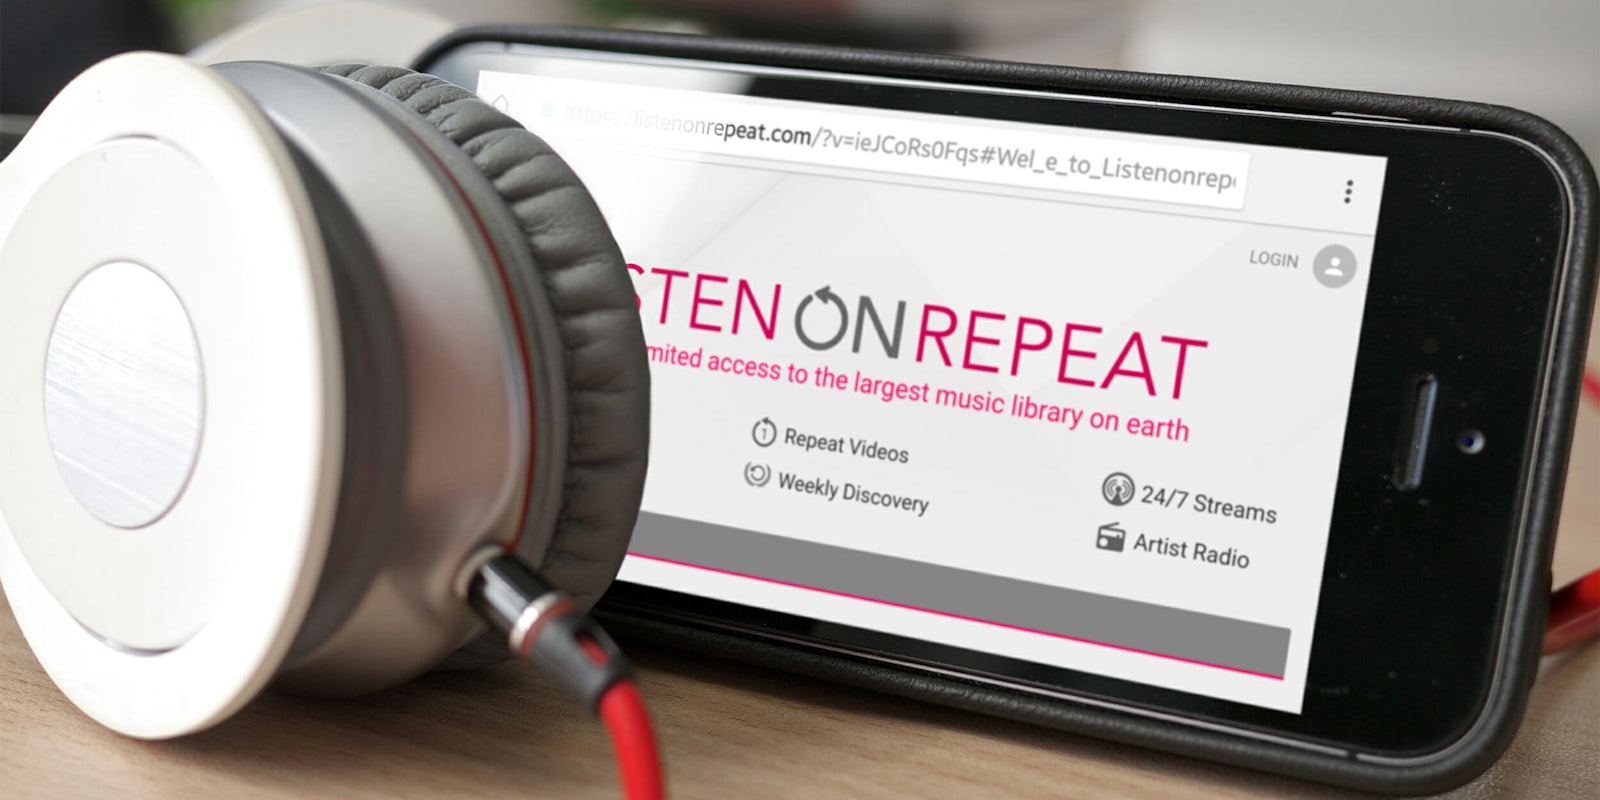 Listen On Repeat website on phone, behind headphones